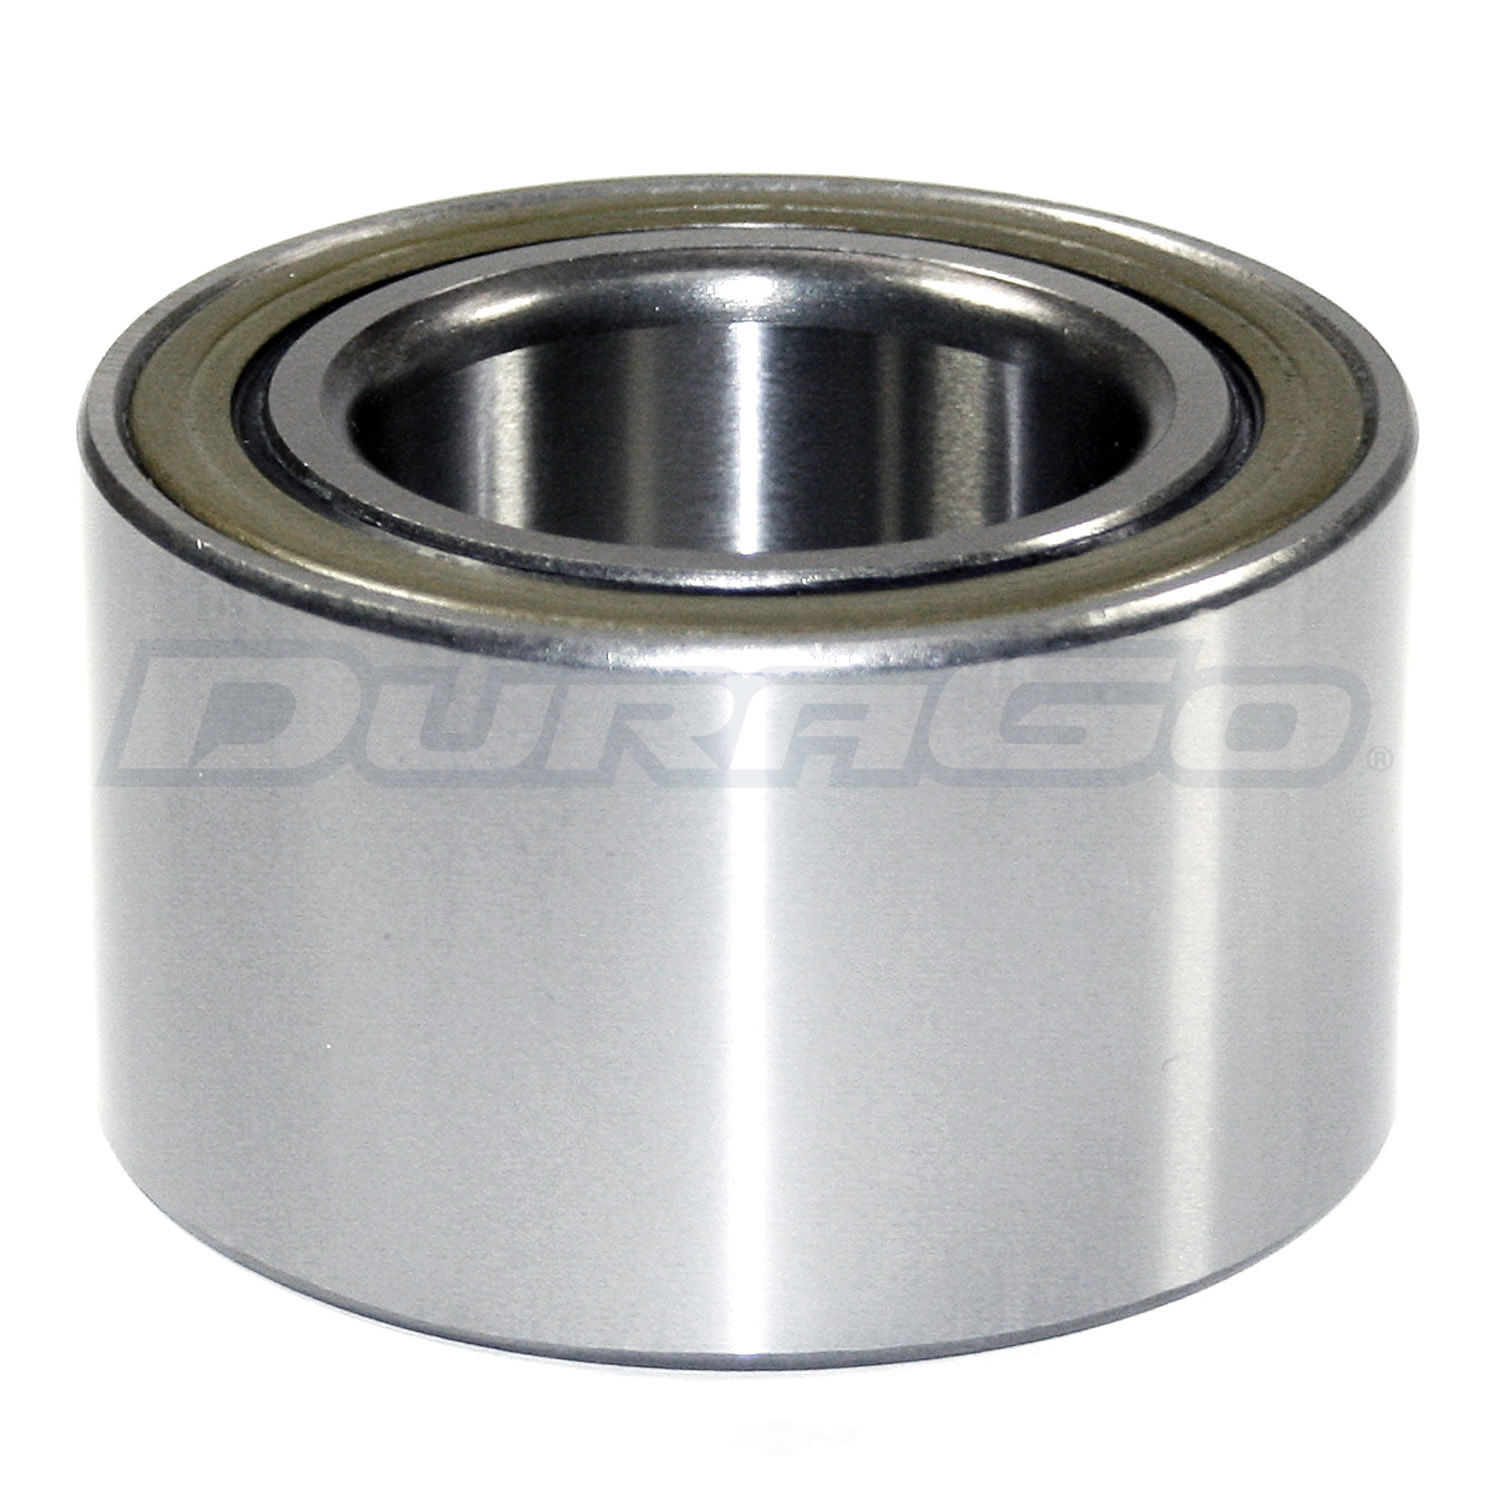 DURAGO - Wheel Bearing - D48 295-10060